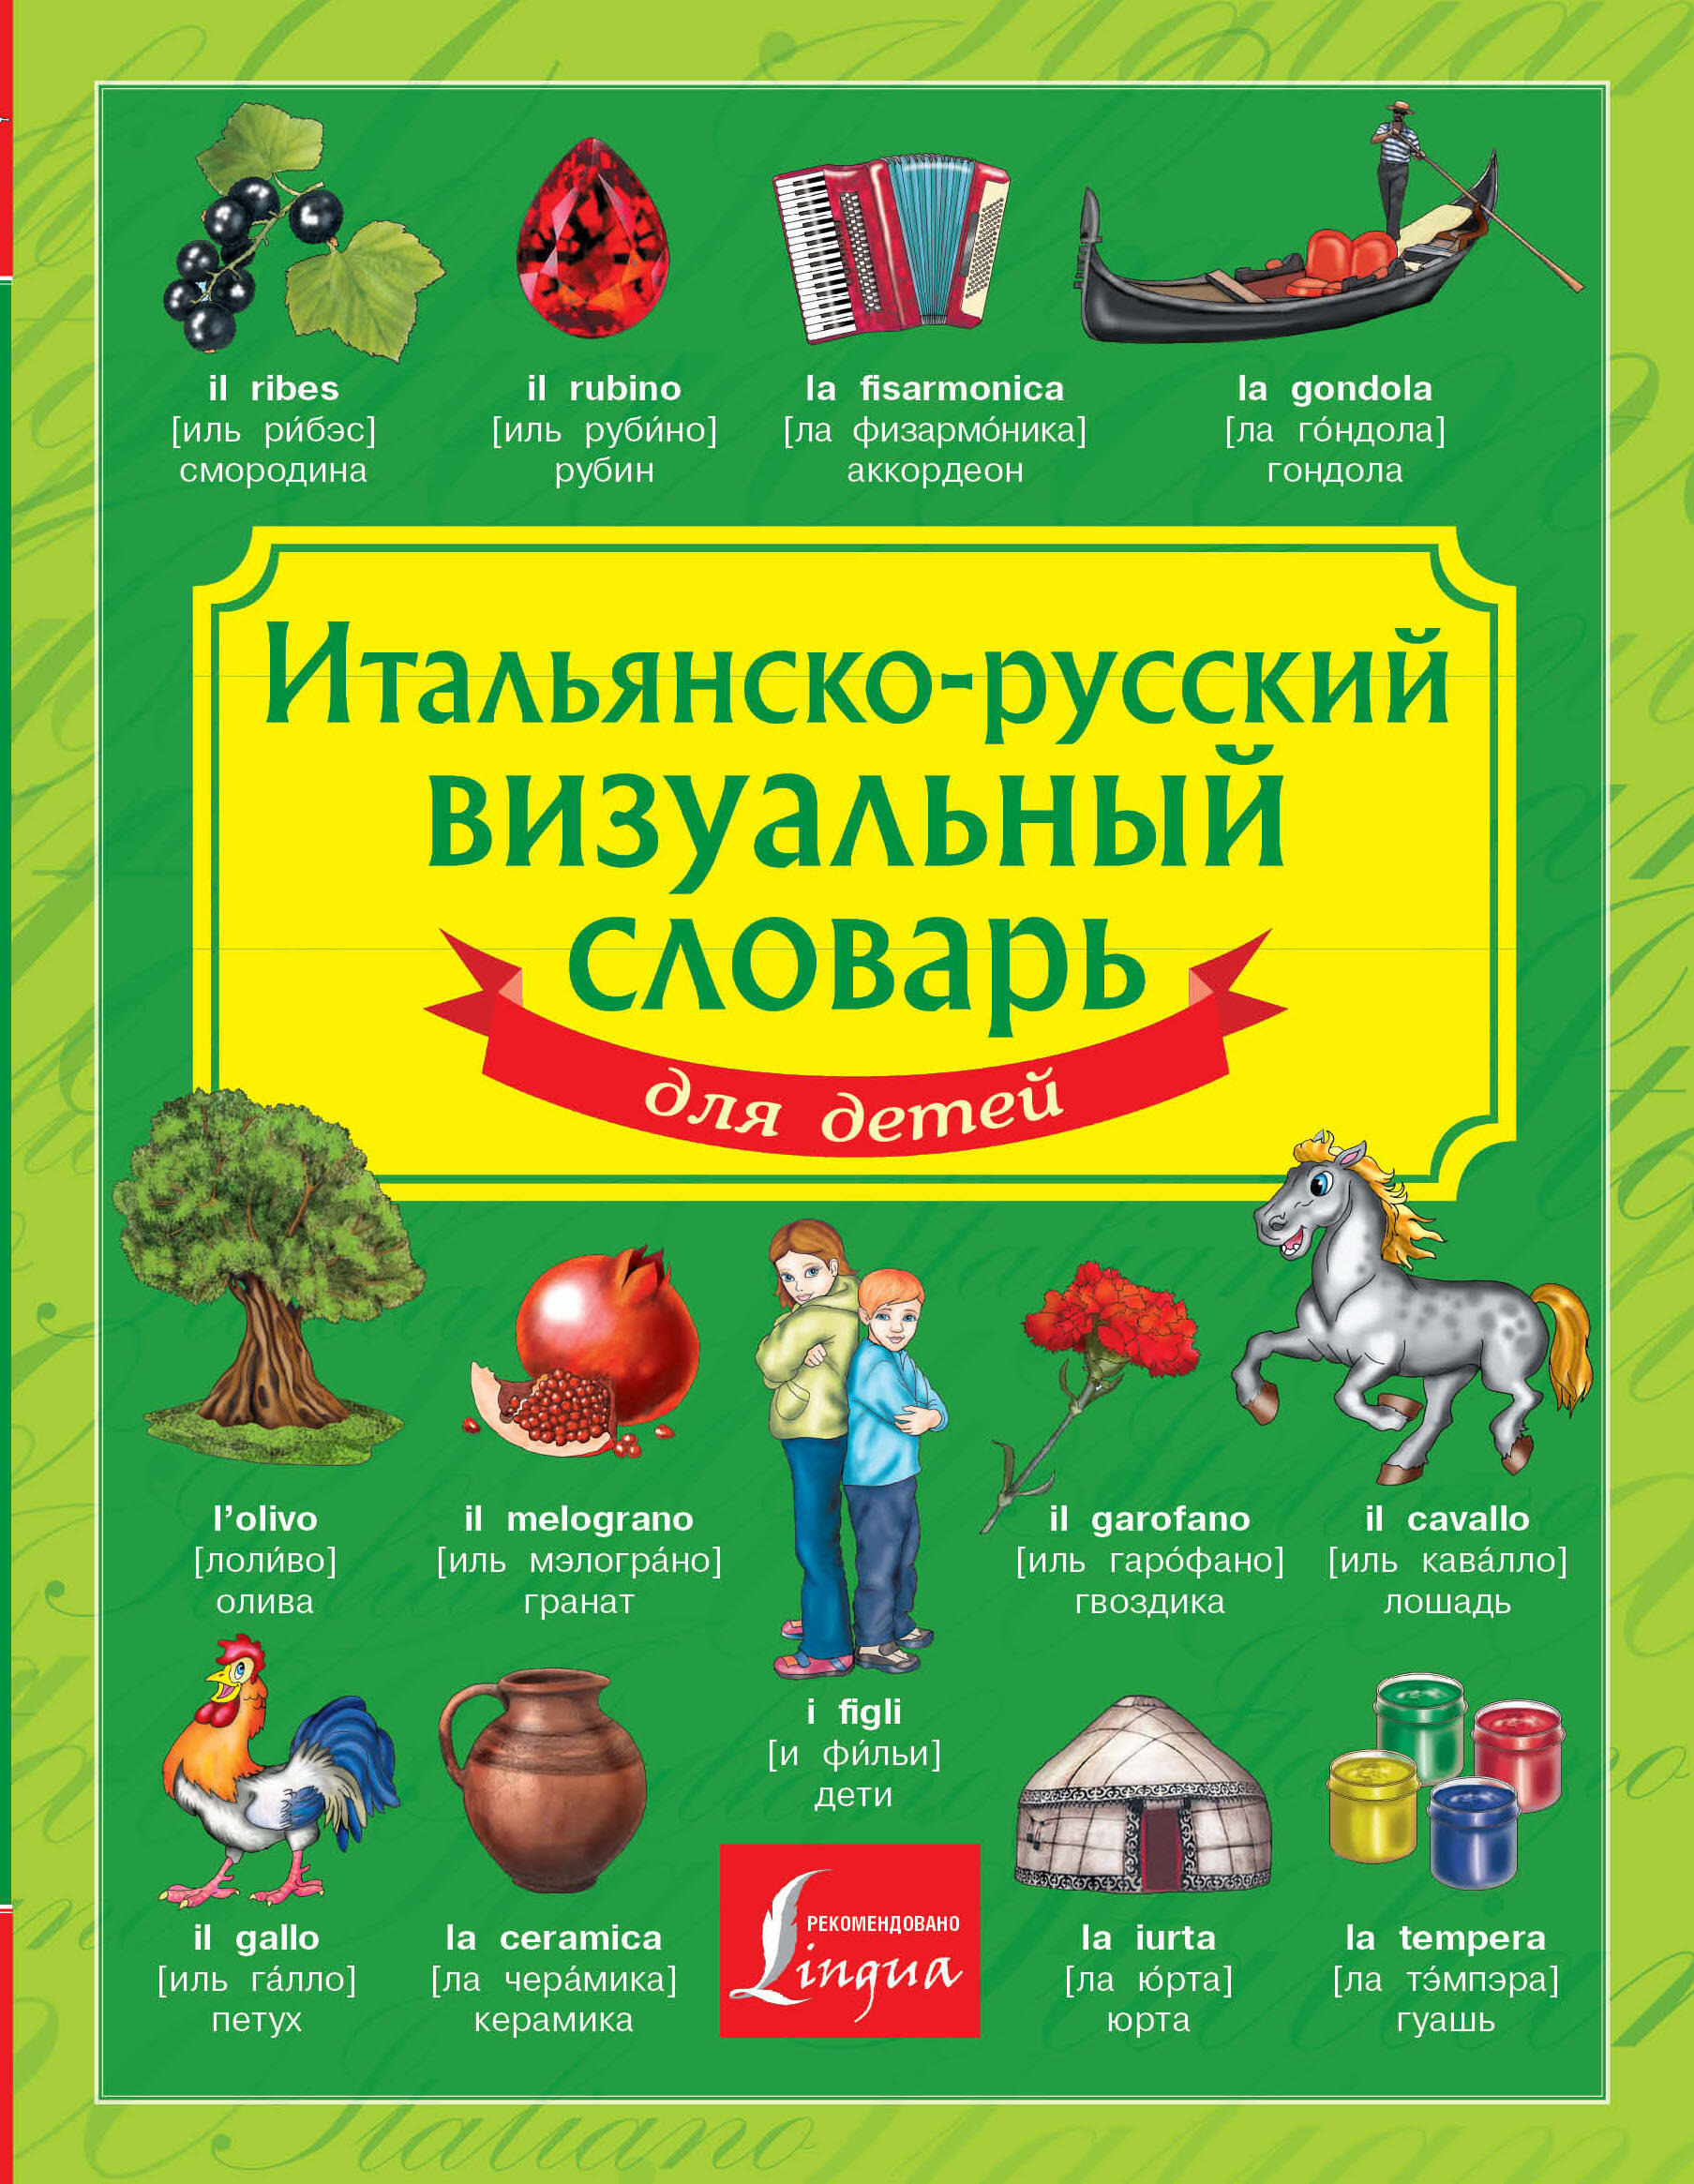  Итальянско-русский визуальный словарь для детей - страница 0